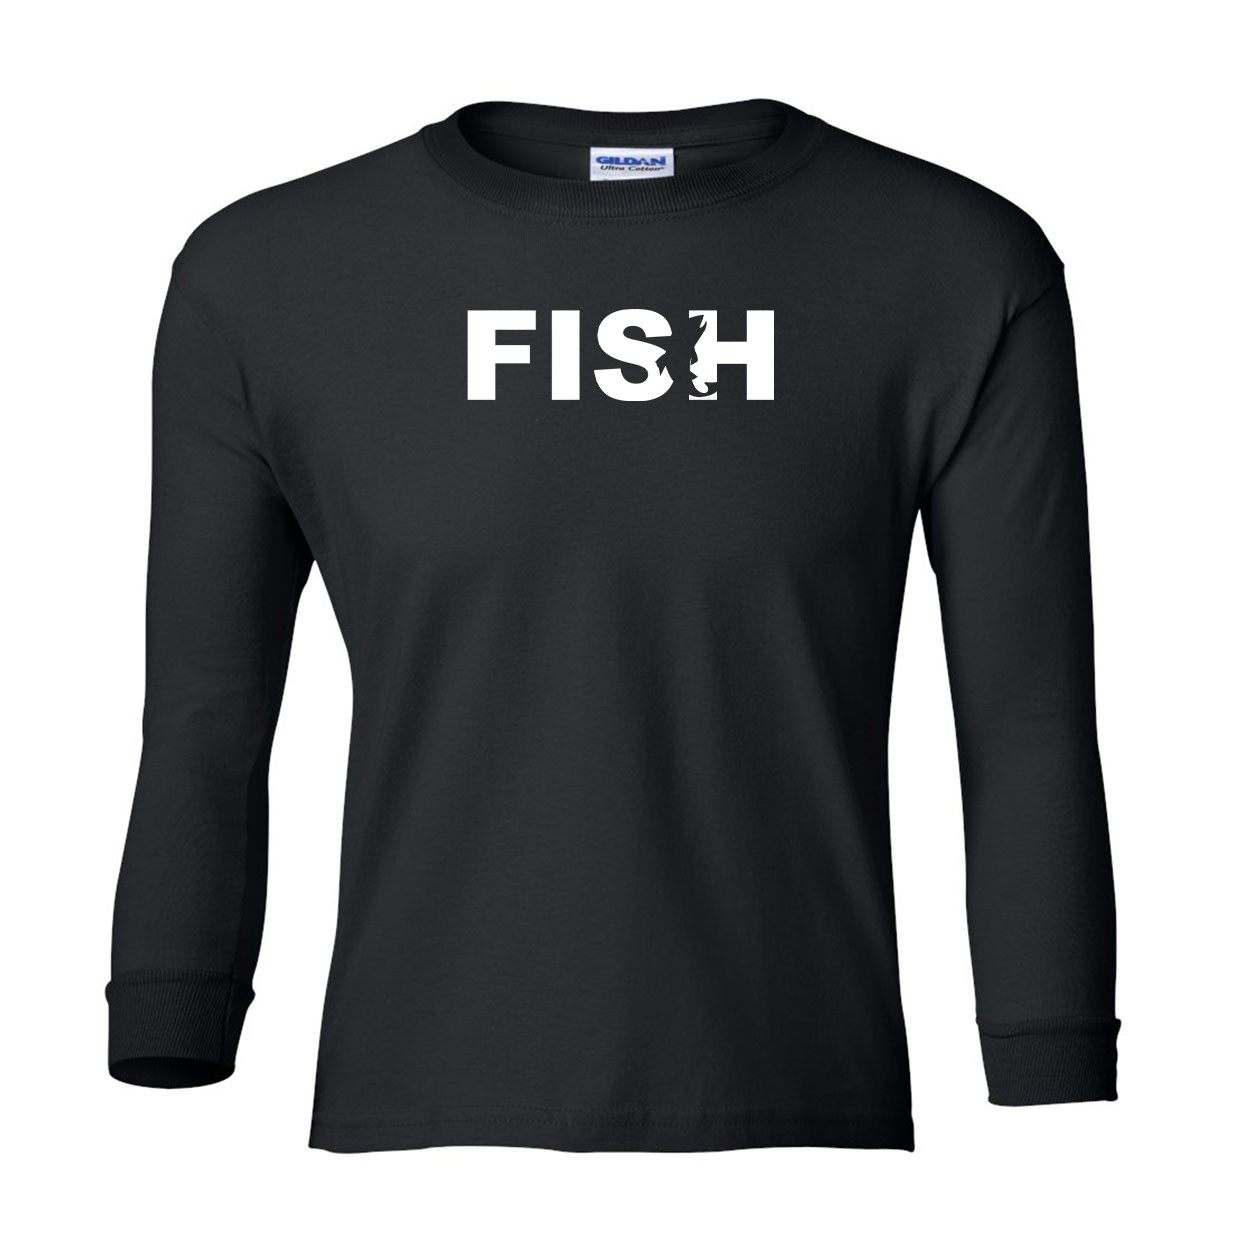 Fish Catch Logo Classic Youth Unisex Long Sleeve T-Shirt Black (White Logo)